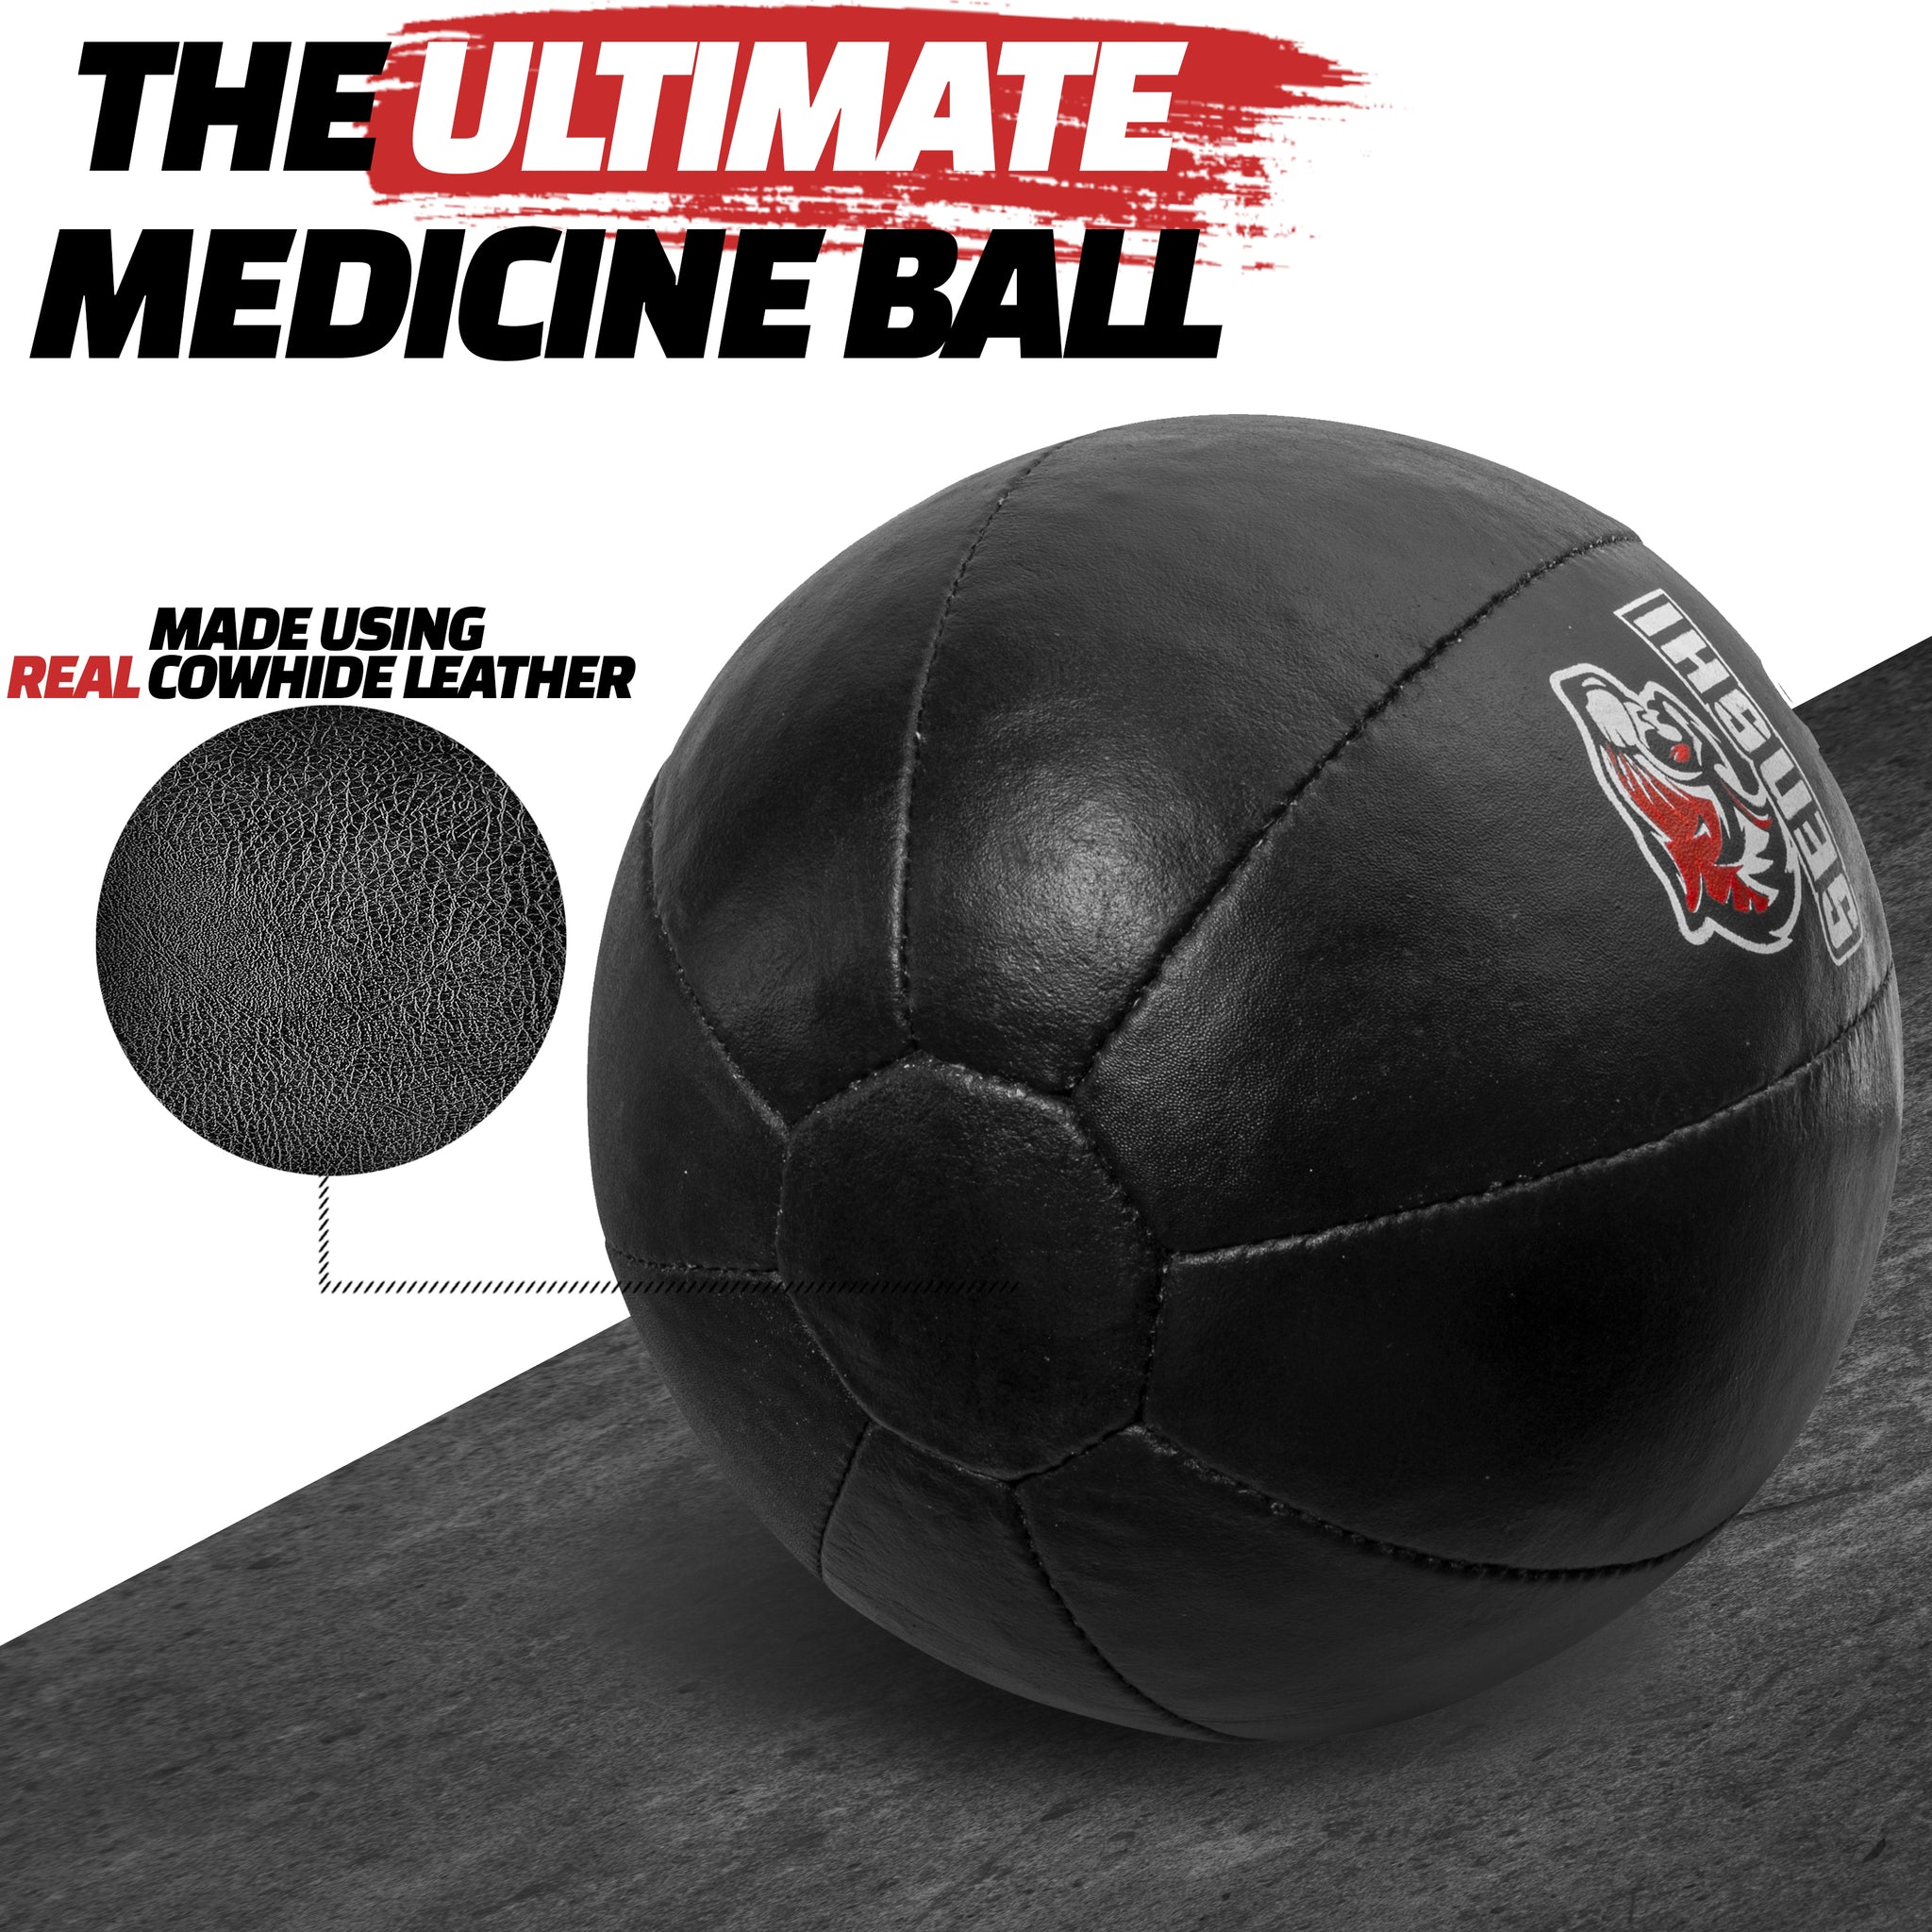 Ballon médicinal de 10 kg, ballon mural lesté en cuir pour le noyau, le sport, l'entraînement